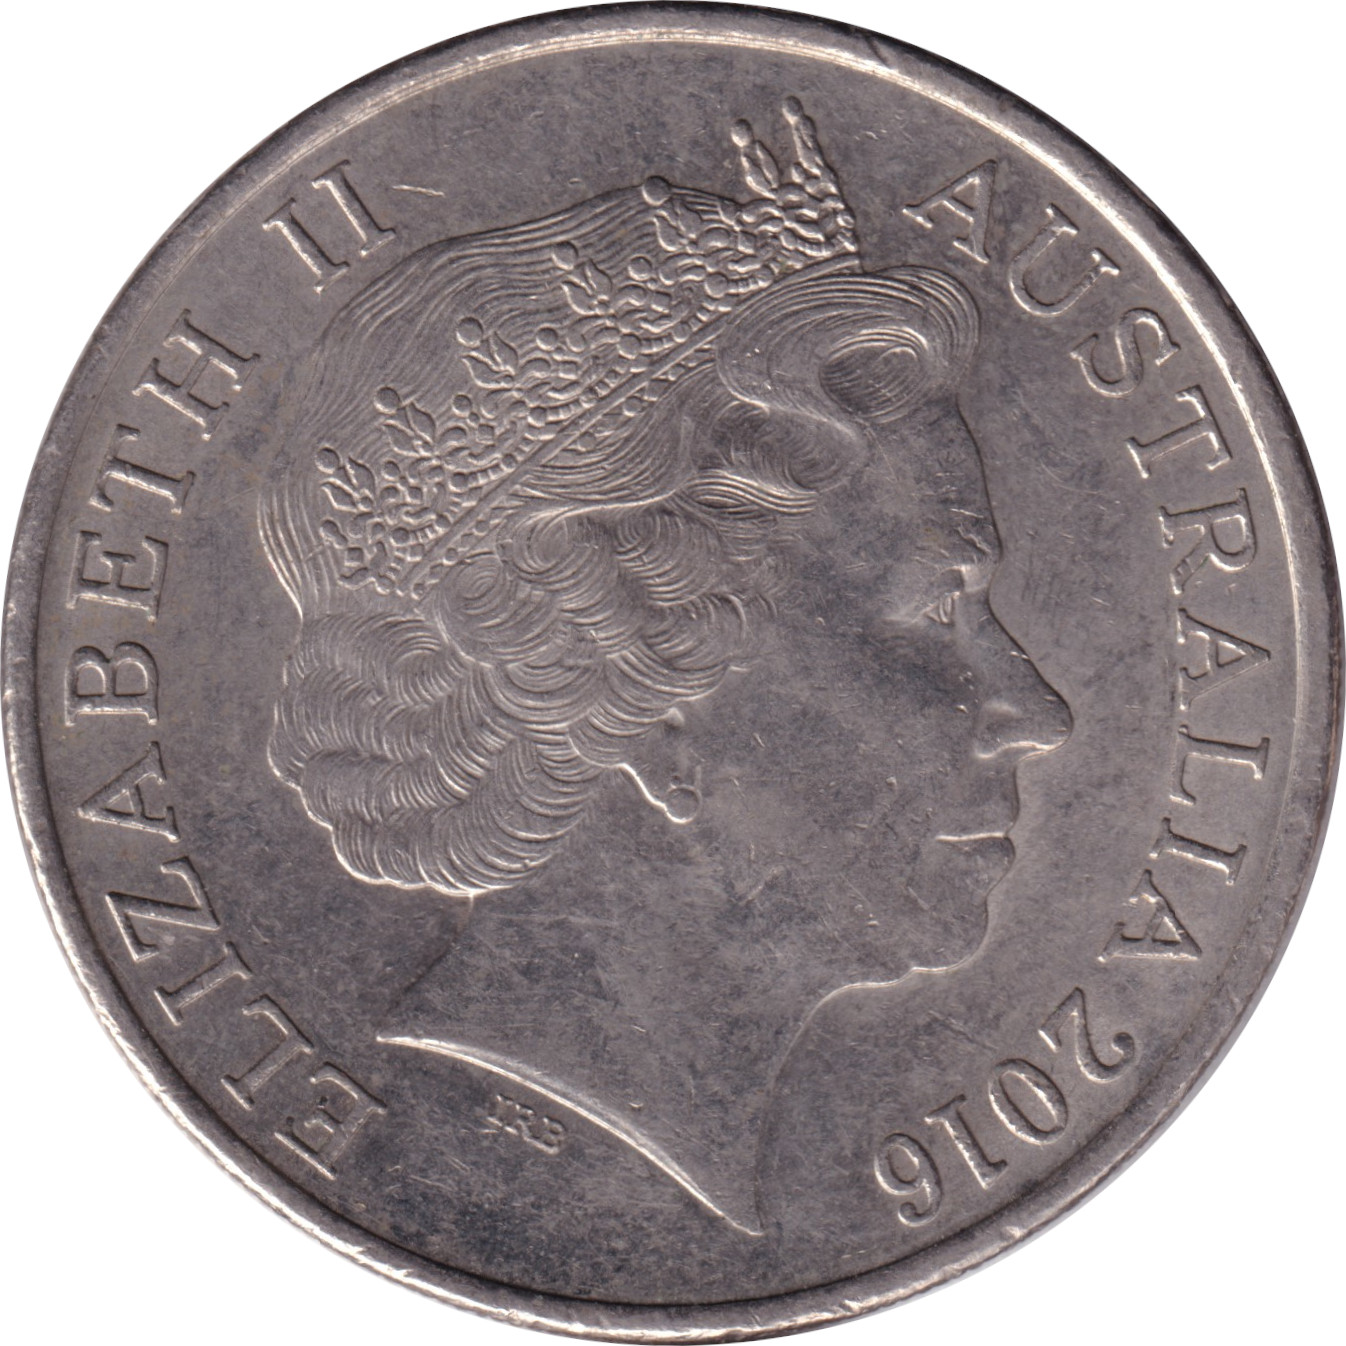 20 cents - Elizabeth II - Tête agée